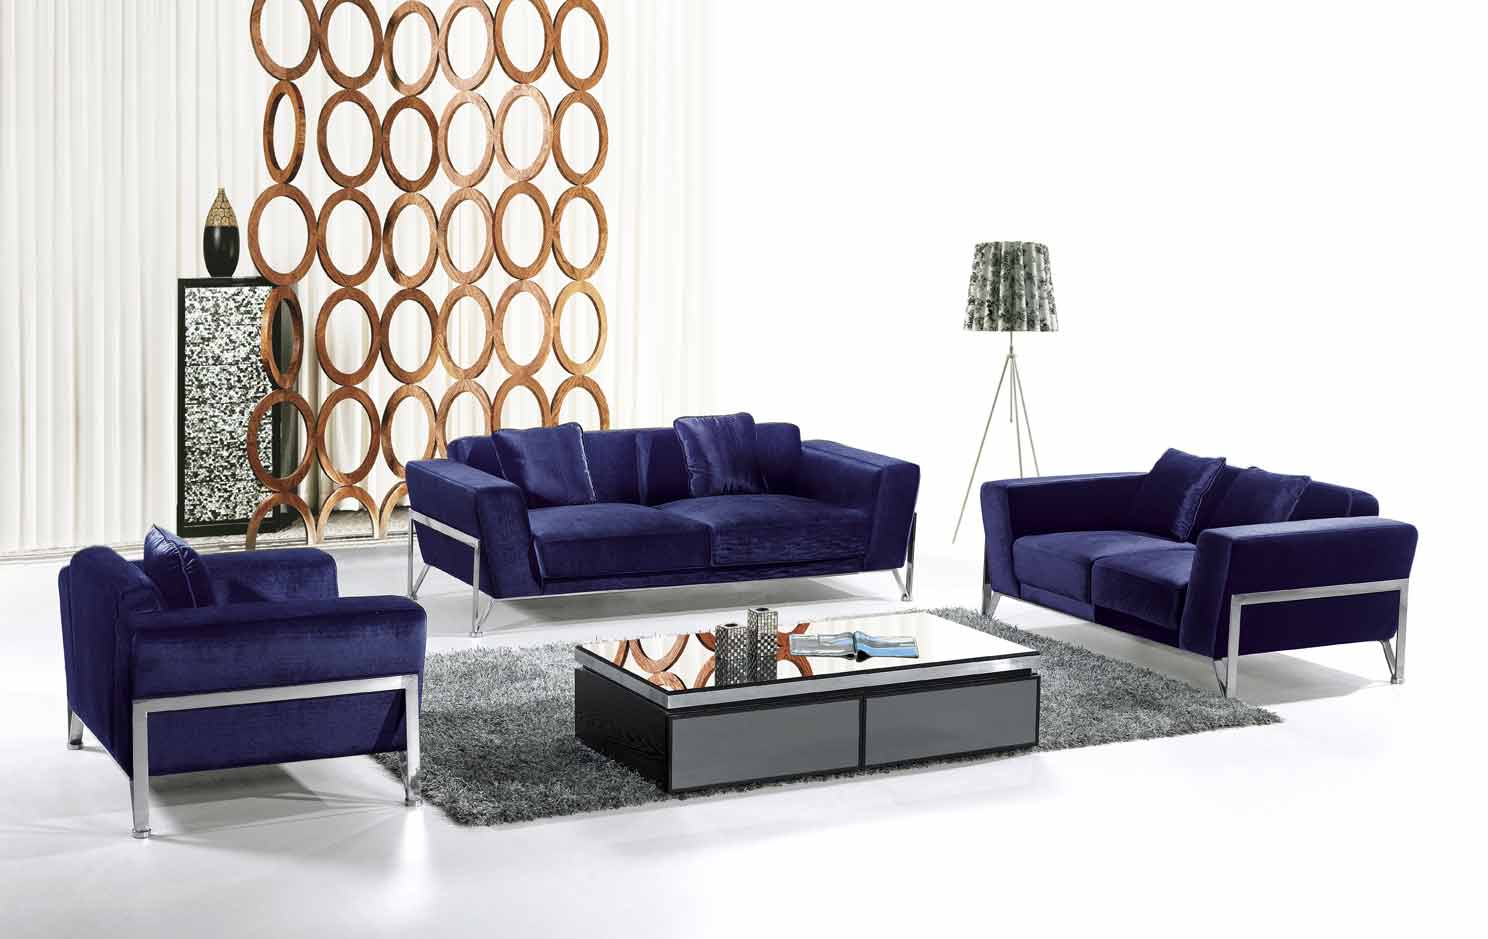 30 Brilliant Living Room Furniture Ideas -DesignBump